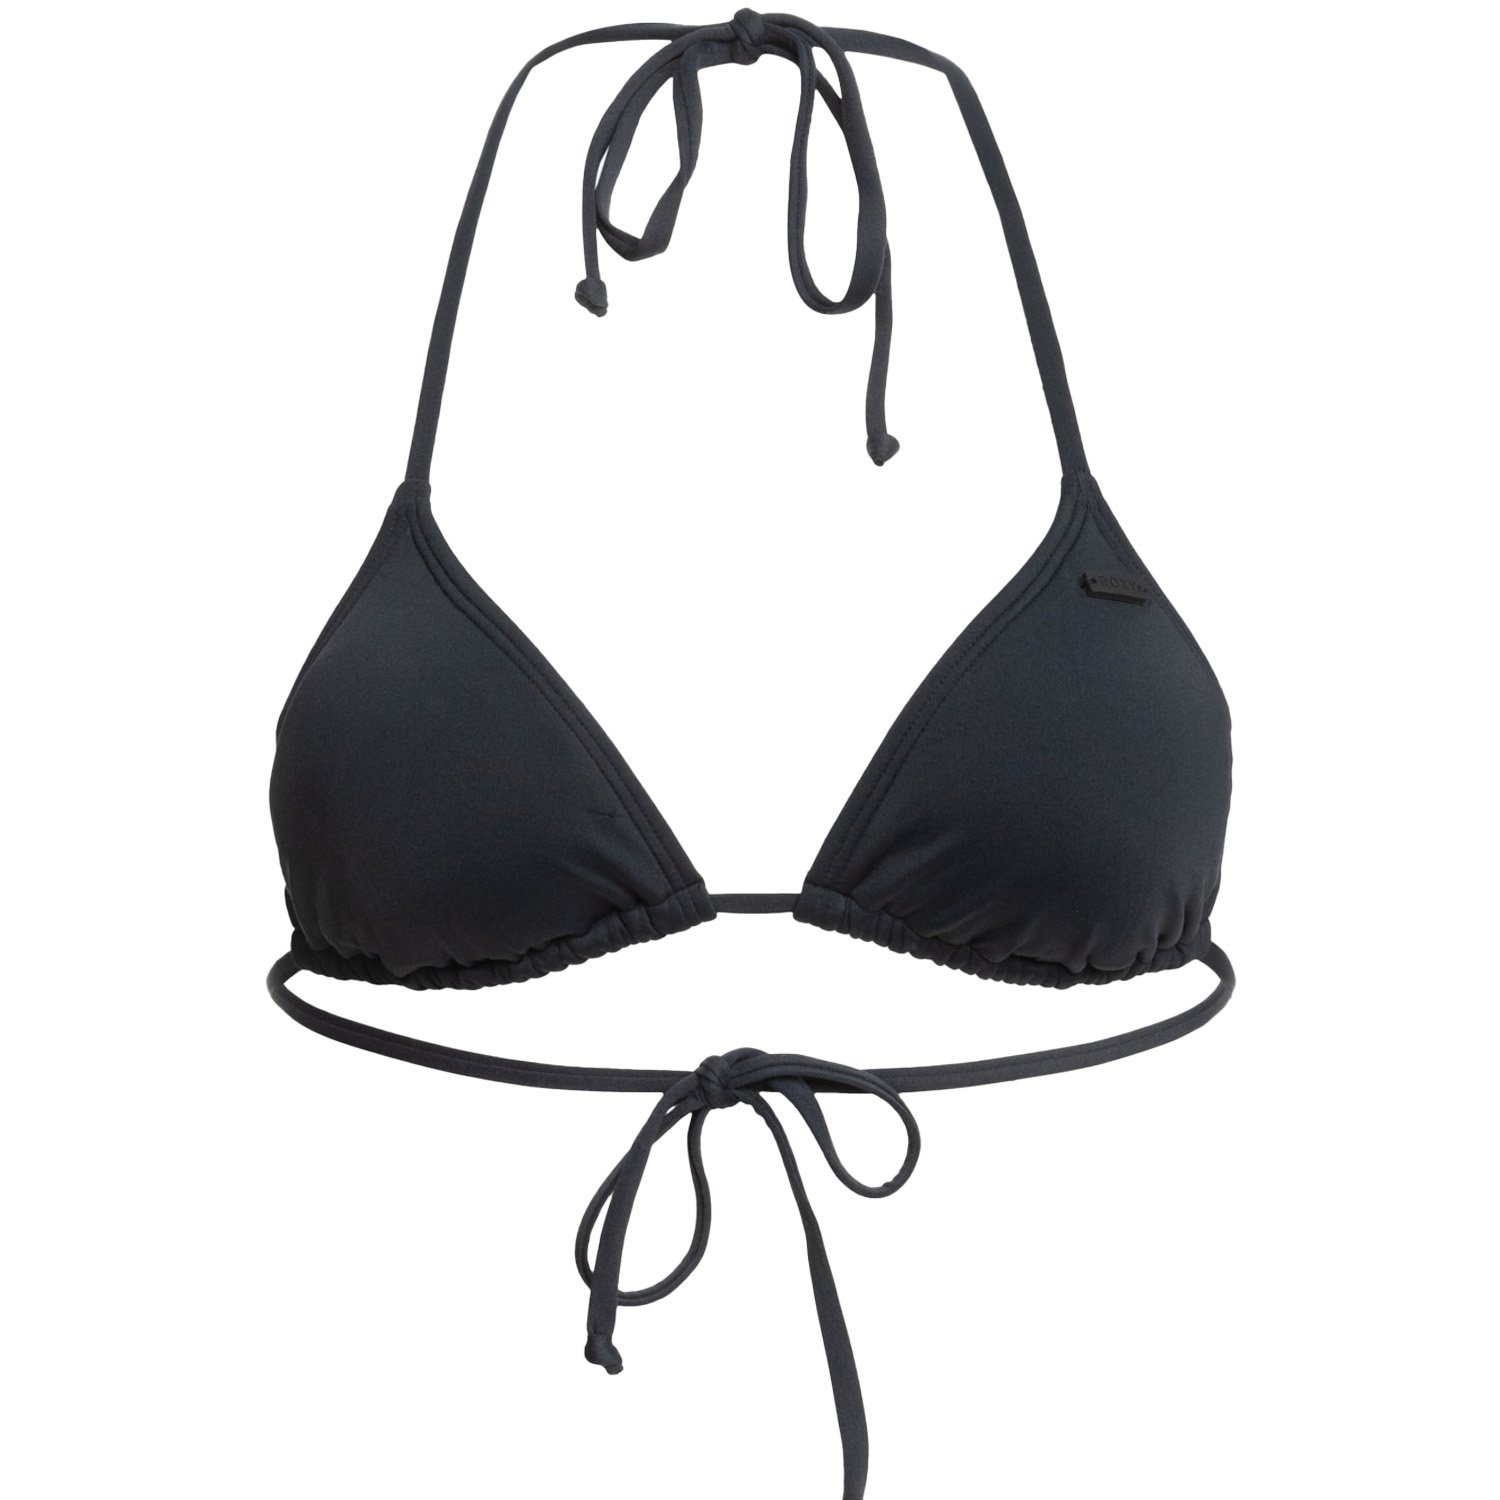 Roxy SD Beach Classic Mod Tiki Tri Kadın Bikini Üstü - Siyah - 1